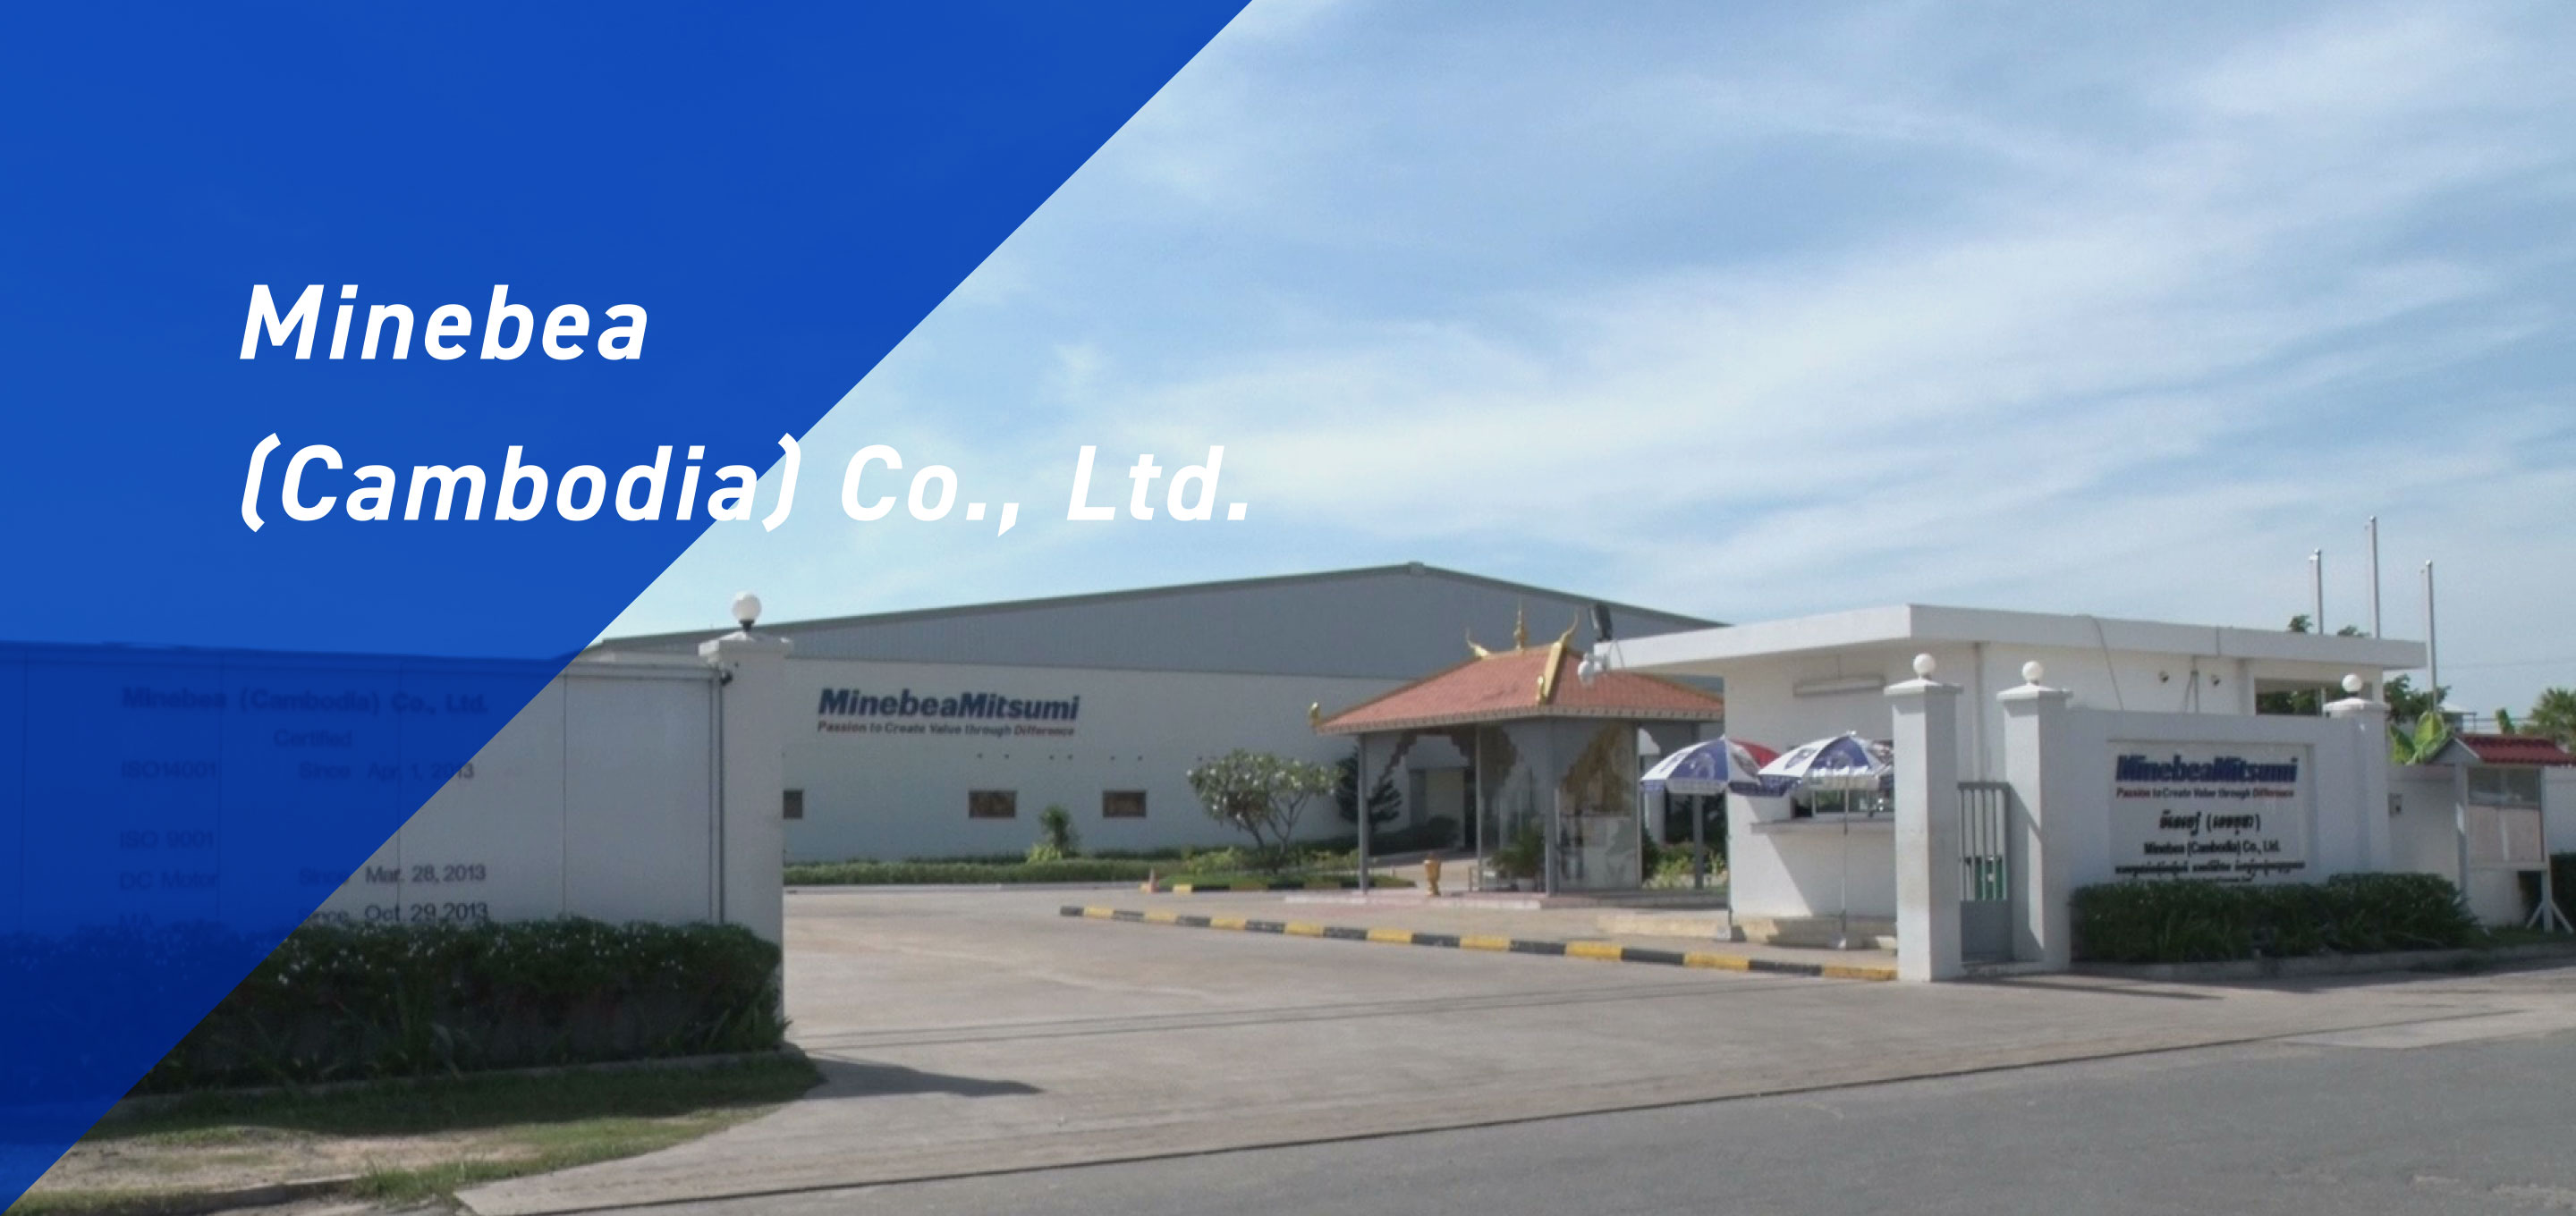 Minebea (Cambodia) Co., Ltd.